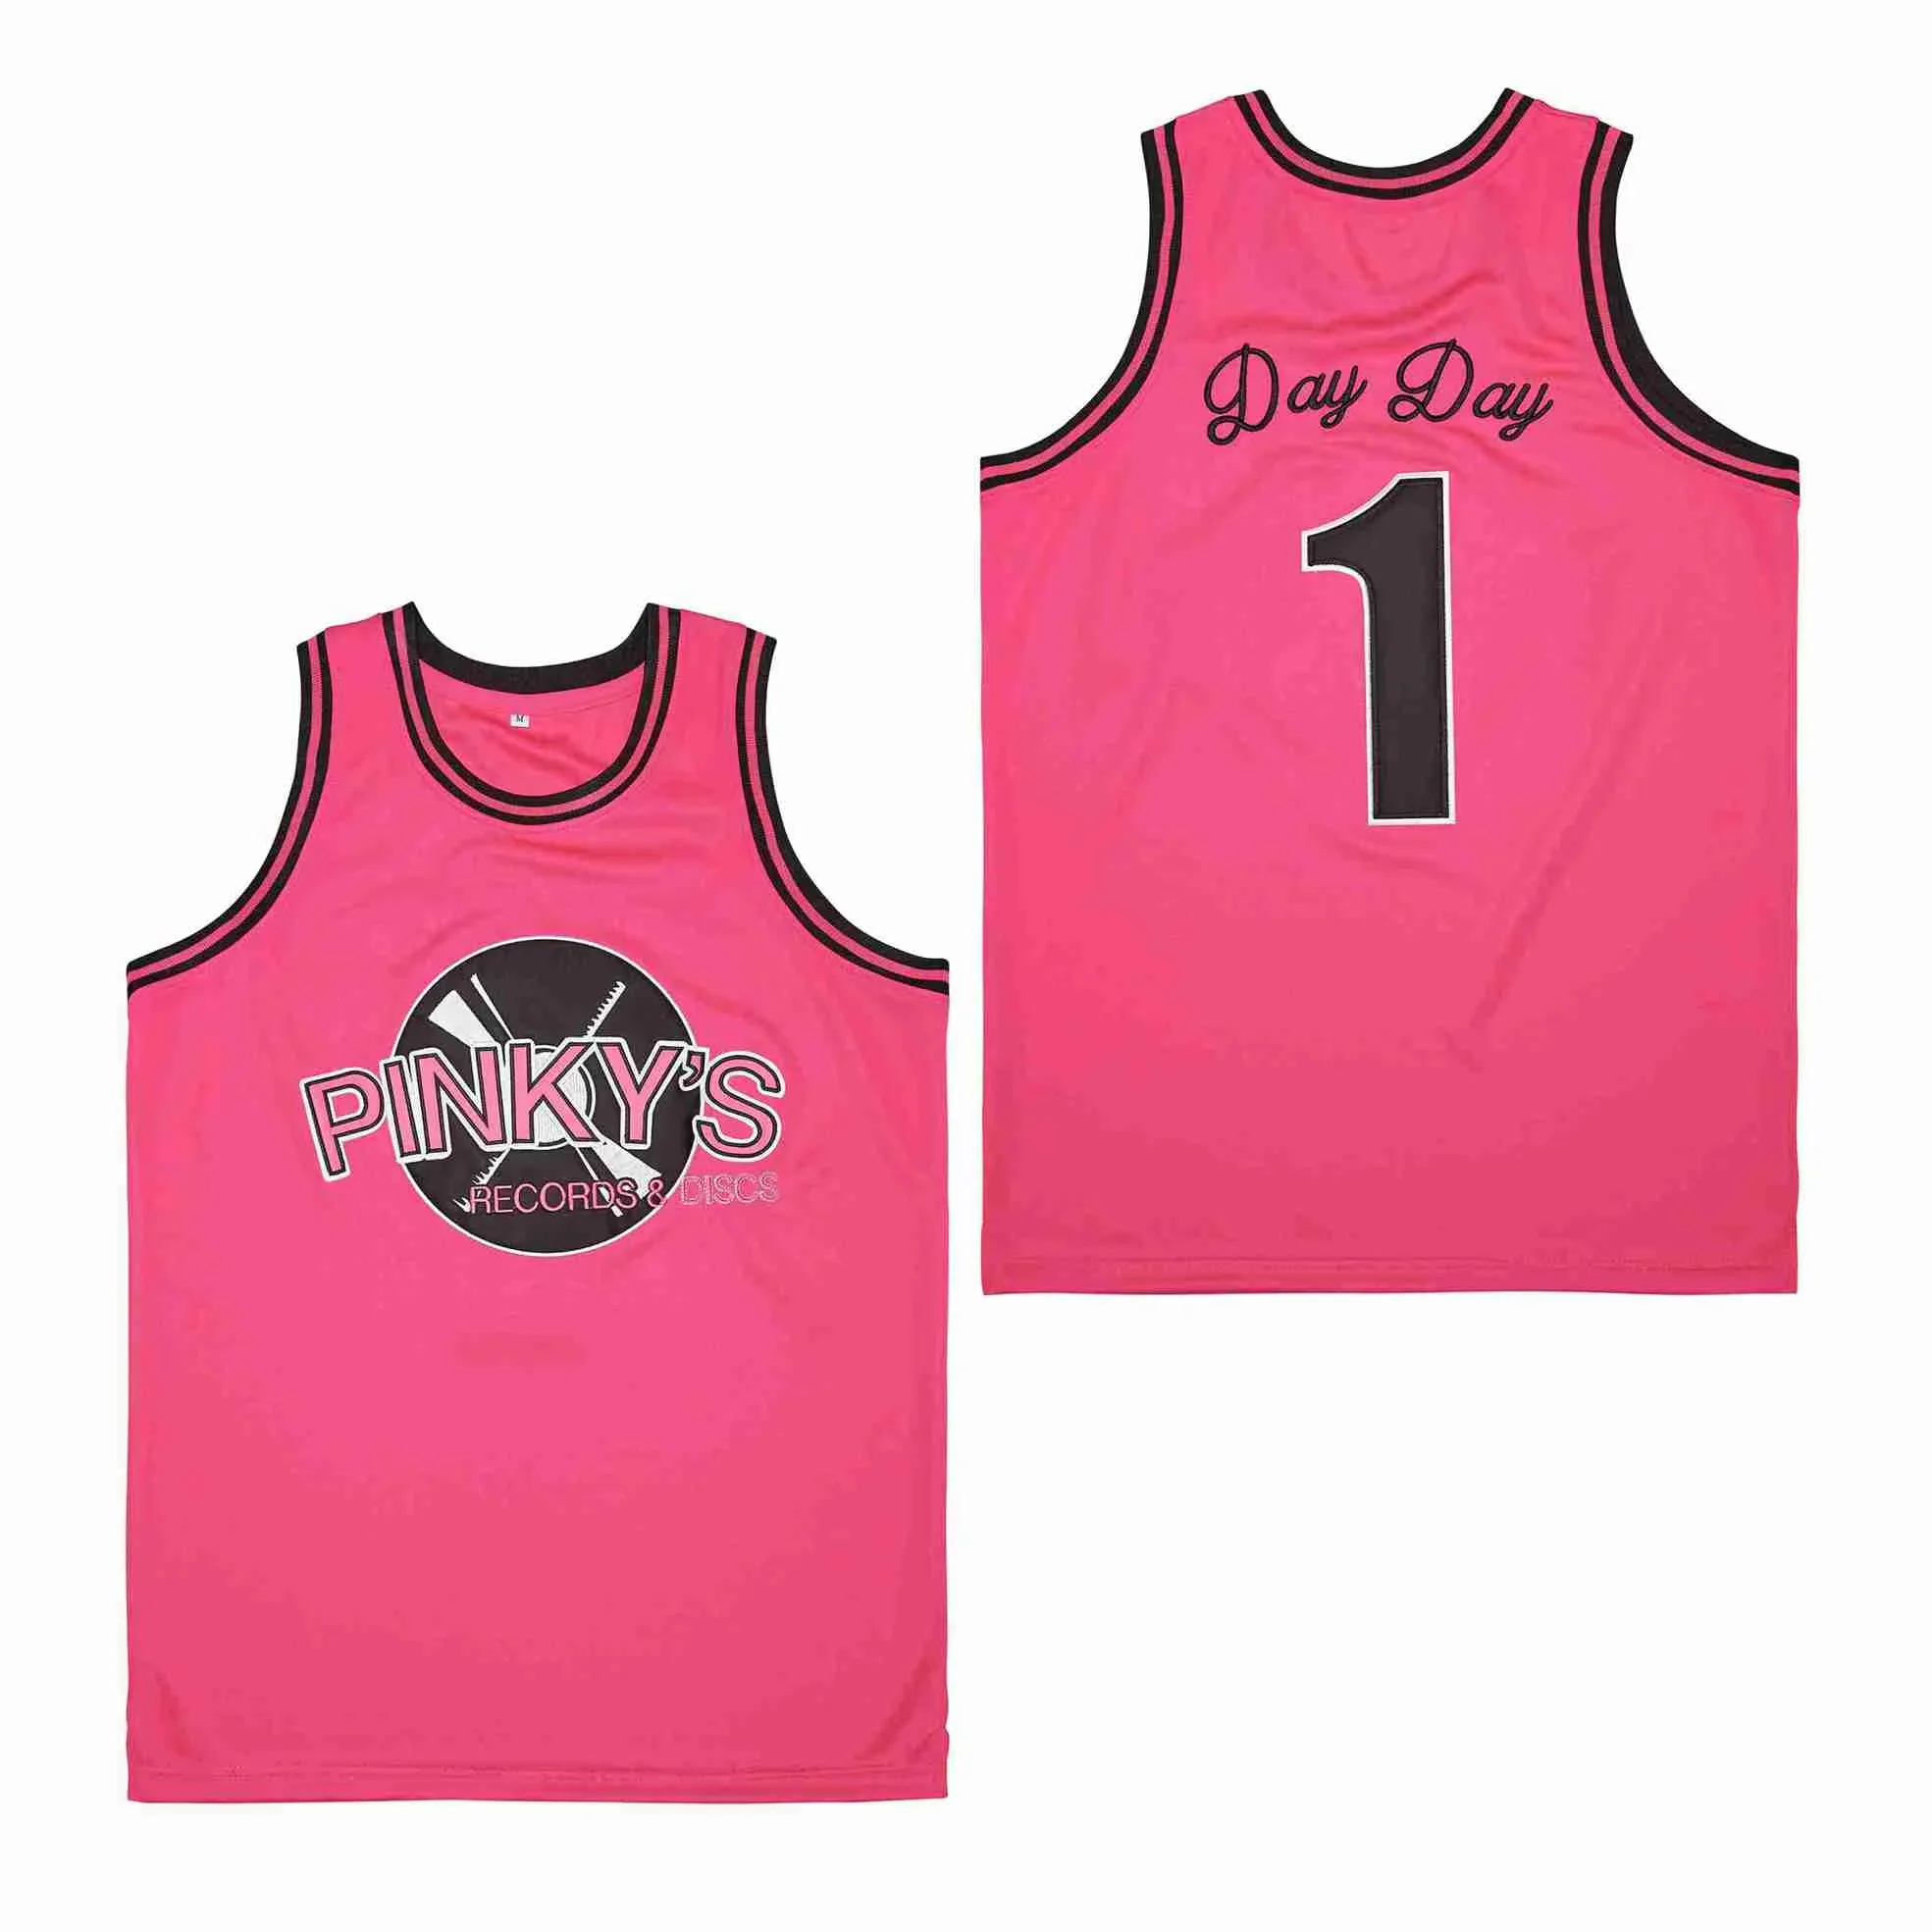 

Новые баскетбольные Джерси PINKYS, магазин товаров для записи, 1 день, Джерси с вышивкой, высокое качество, для занятий спортом на открытом воздухе, в стиле хип-хоп, розовый цвет, новинка 2023